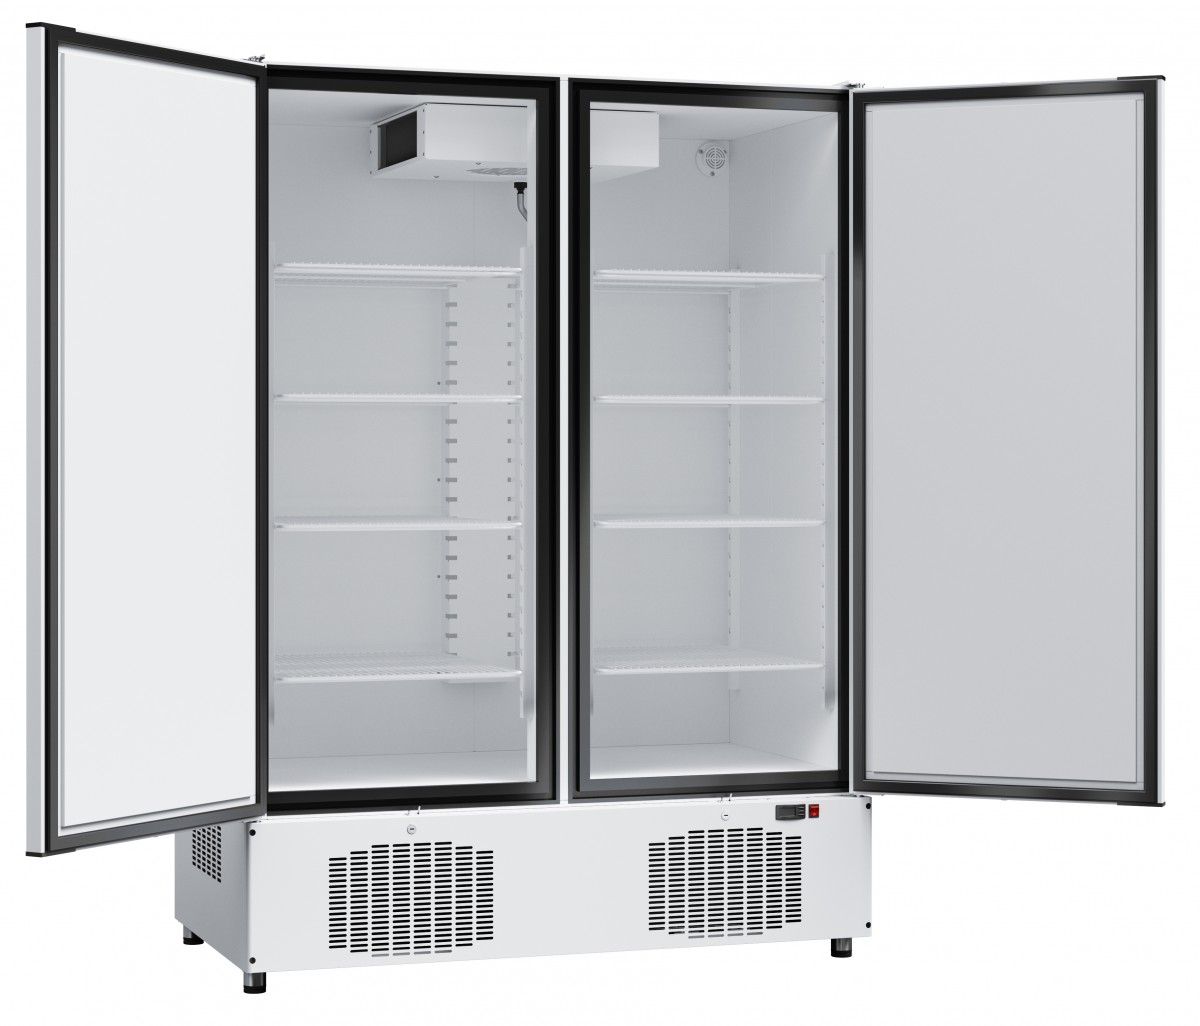 Шкаф холодильный среднетемпературный ШХс-1,4-02 краш.